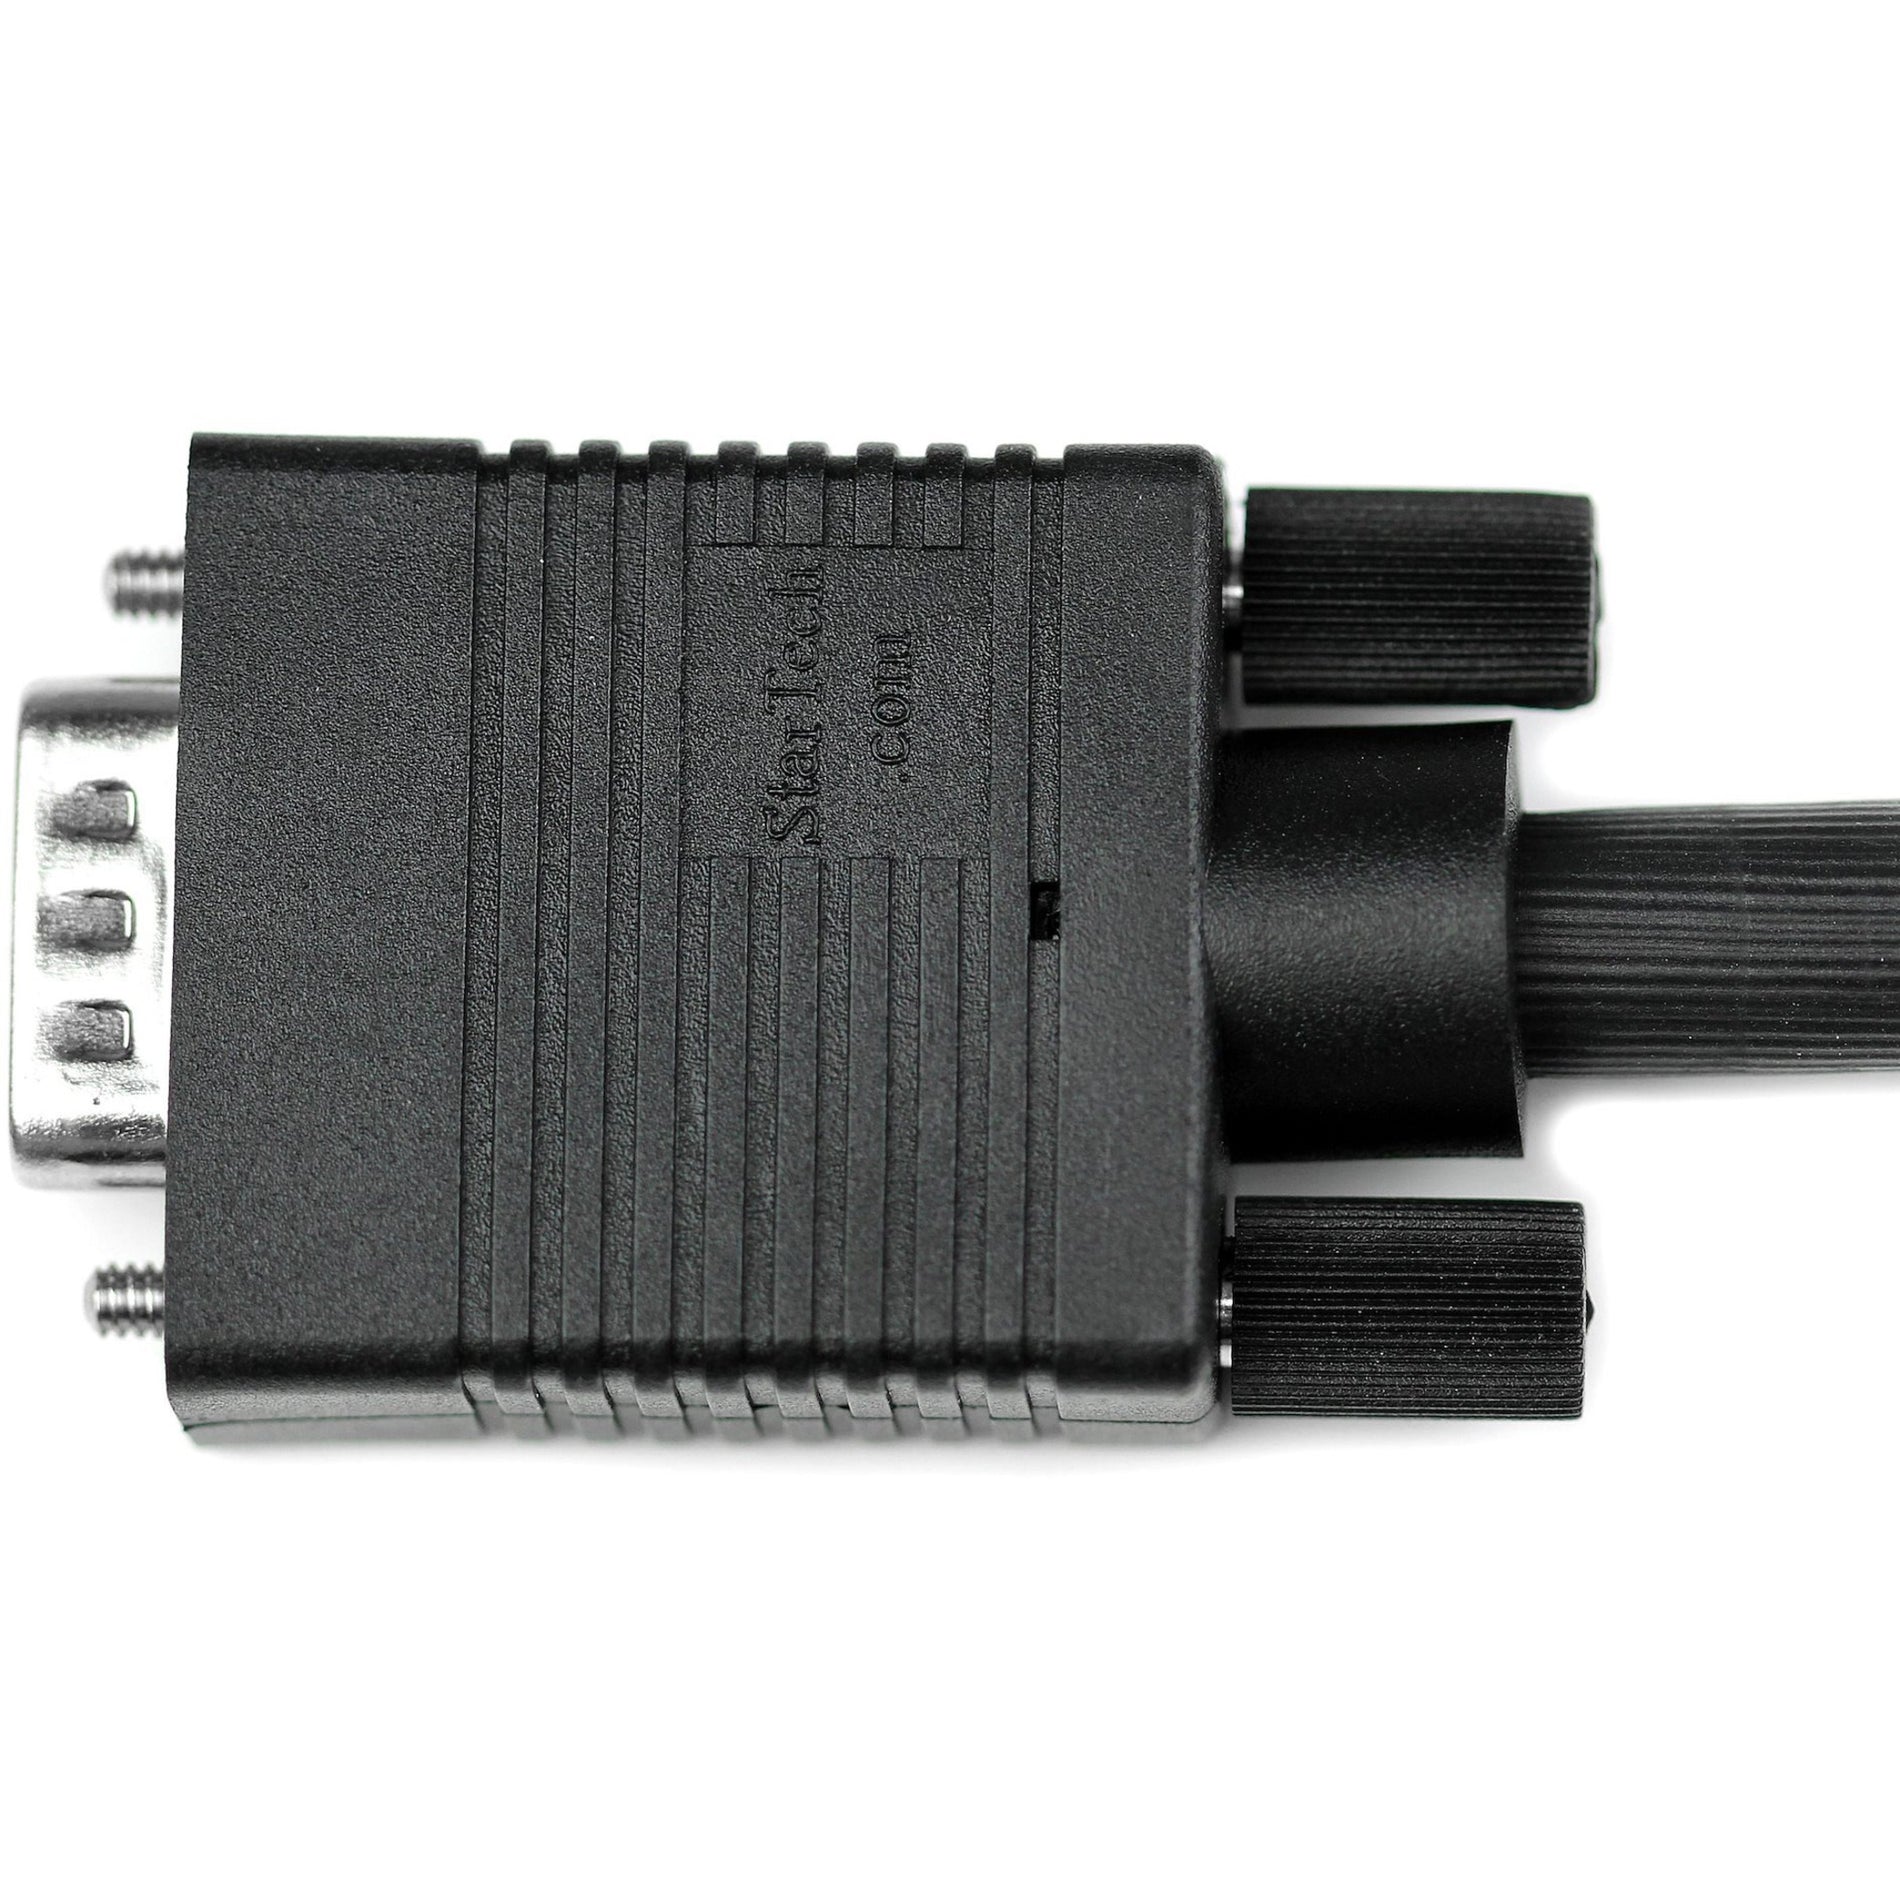 スタートゥリック・ドットコム MXT101MMHQ10 10フィート コアックス ハイレゾ モニター VGA ケーブル HD15 M/M、成形、EMI 保護、1920 x 1200、ブラック